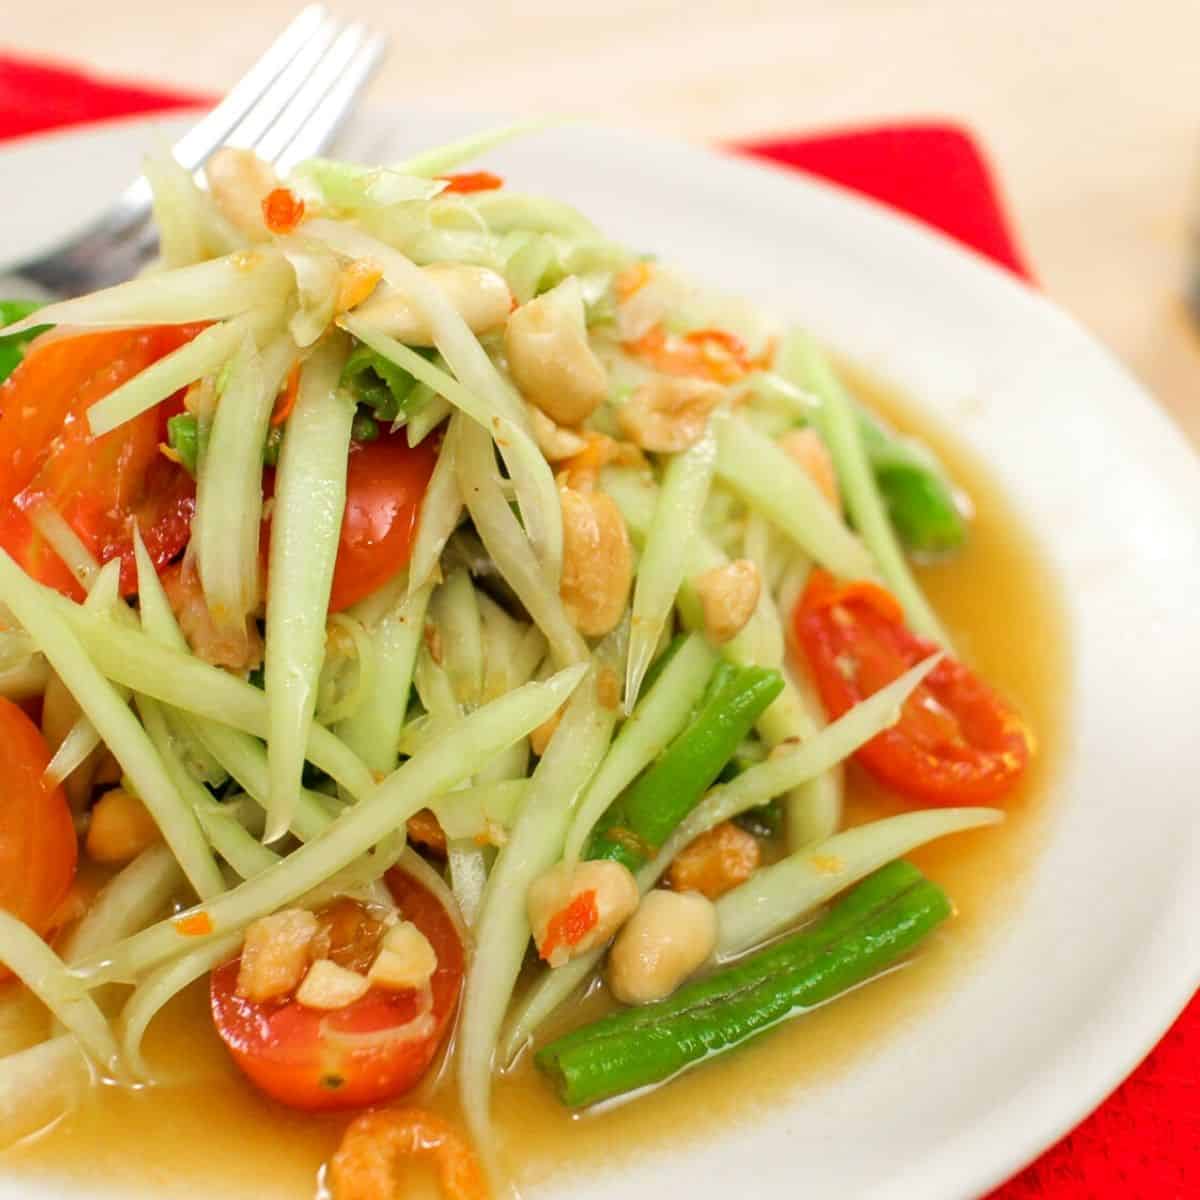 A plate of Thai green papaya salad